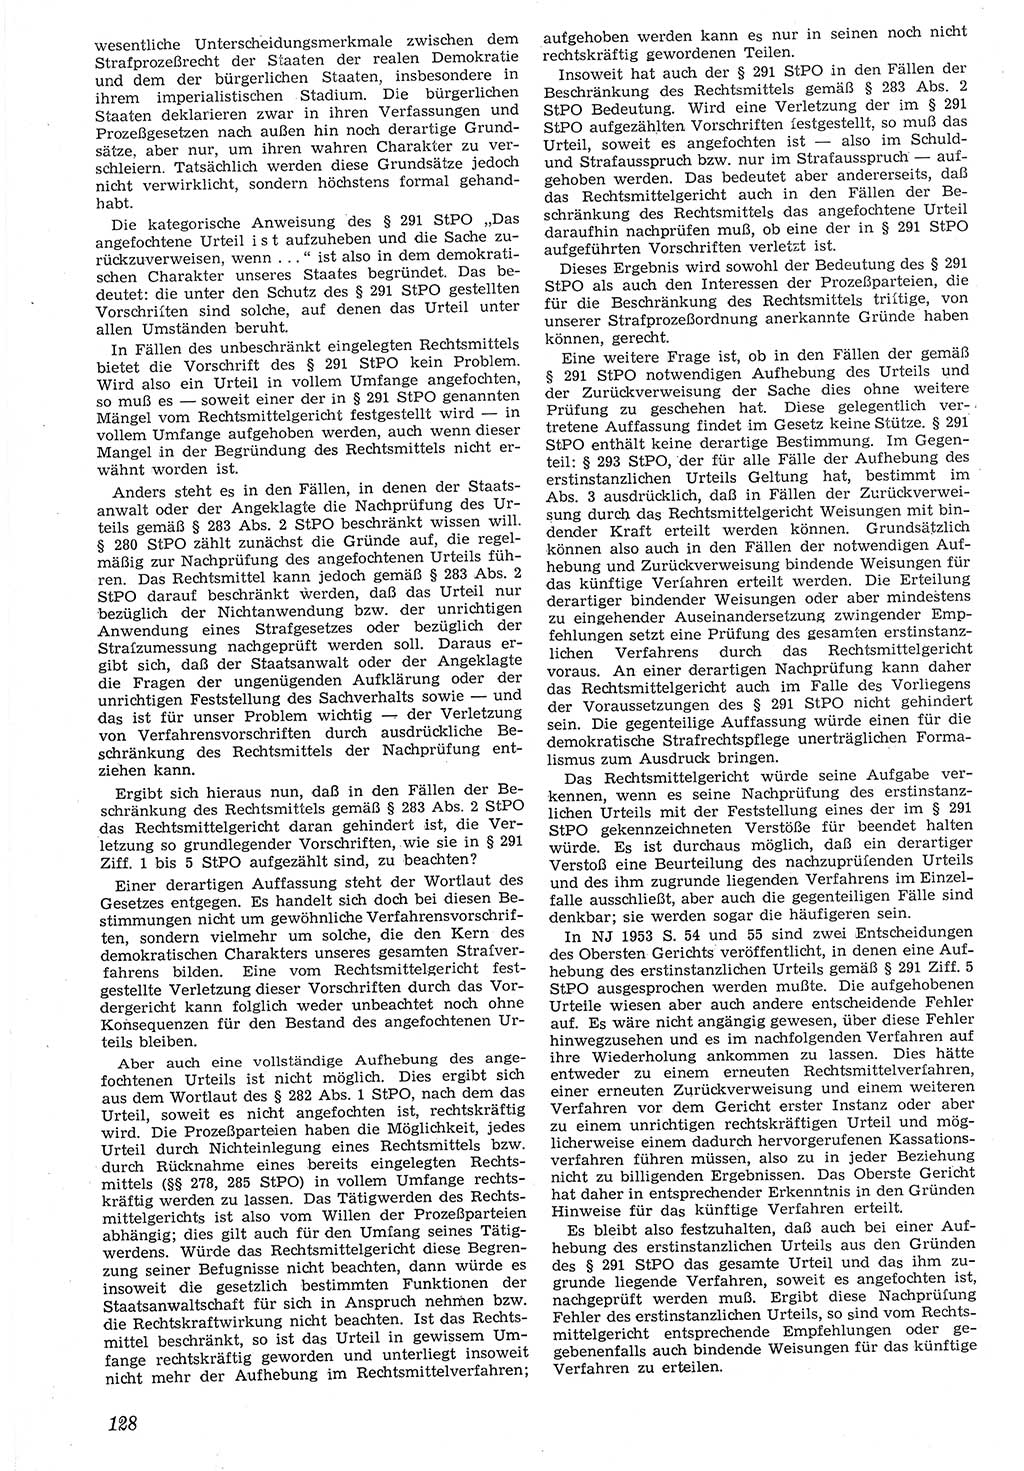 Neue Justiz (NJ), Zeitschrift für Recht und Rechtswissenschaft [Deutsche Demokratische Republik (DDR)], 7. Jahrgang 1953, Seite 128 (NJ DDR 1953, S. 128)